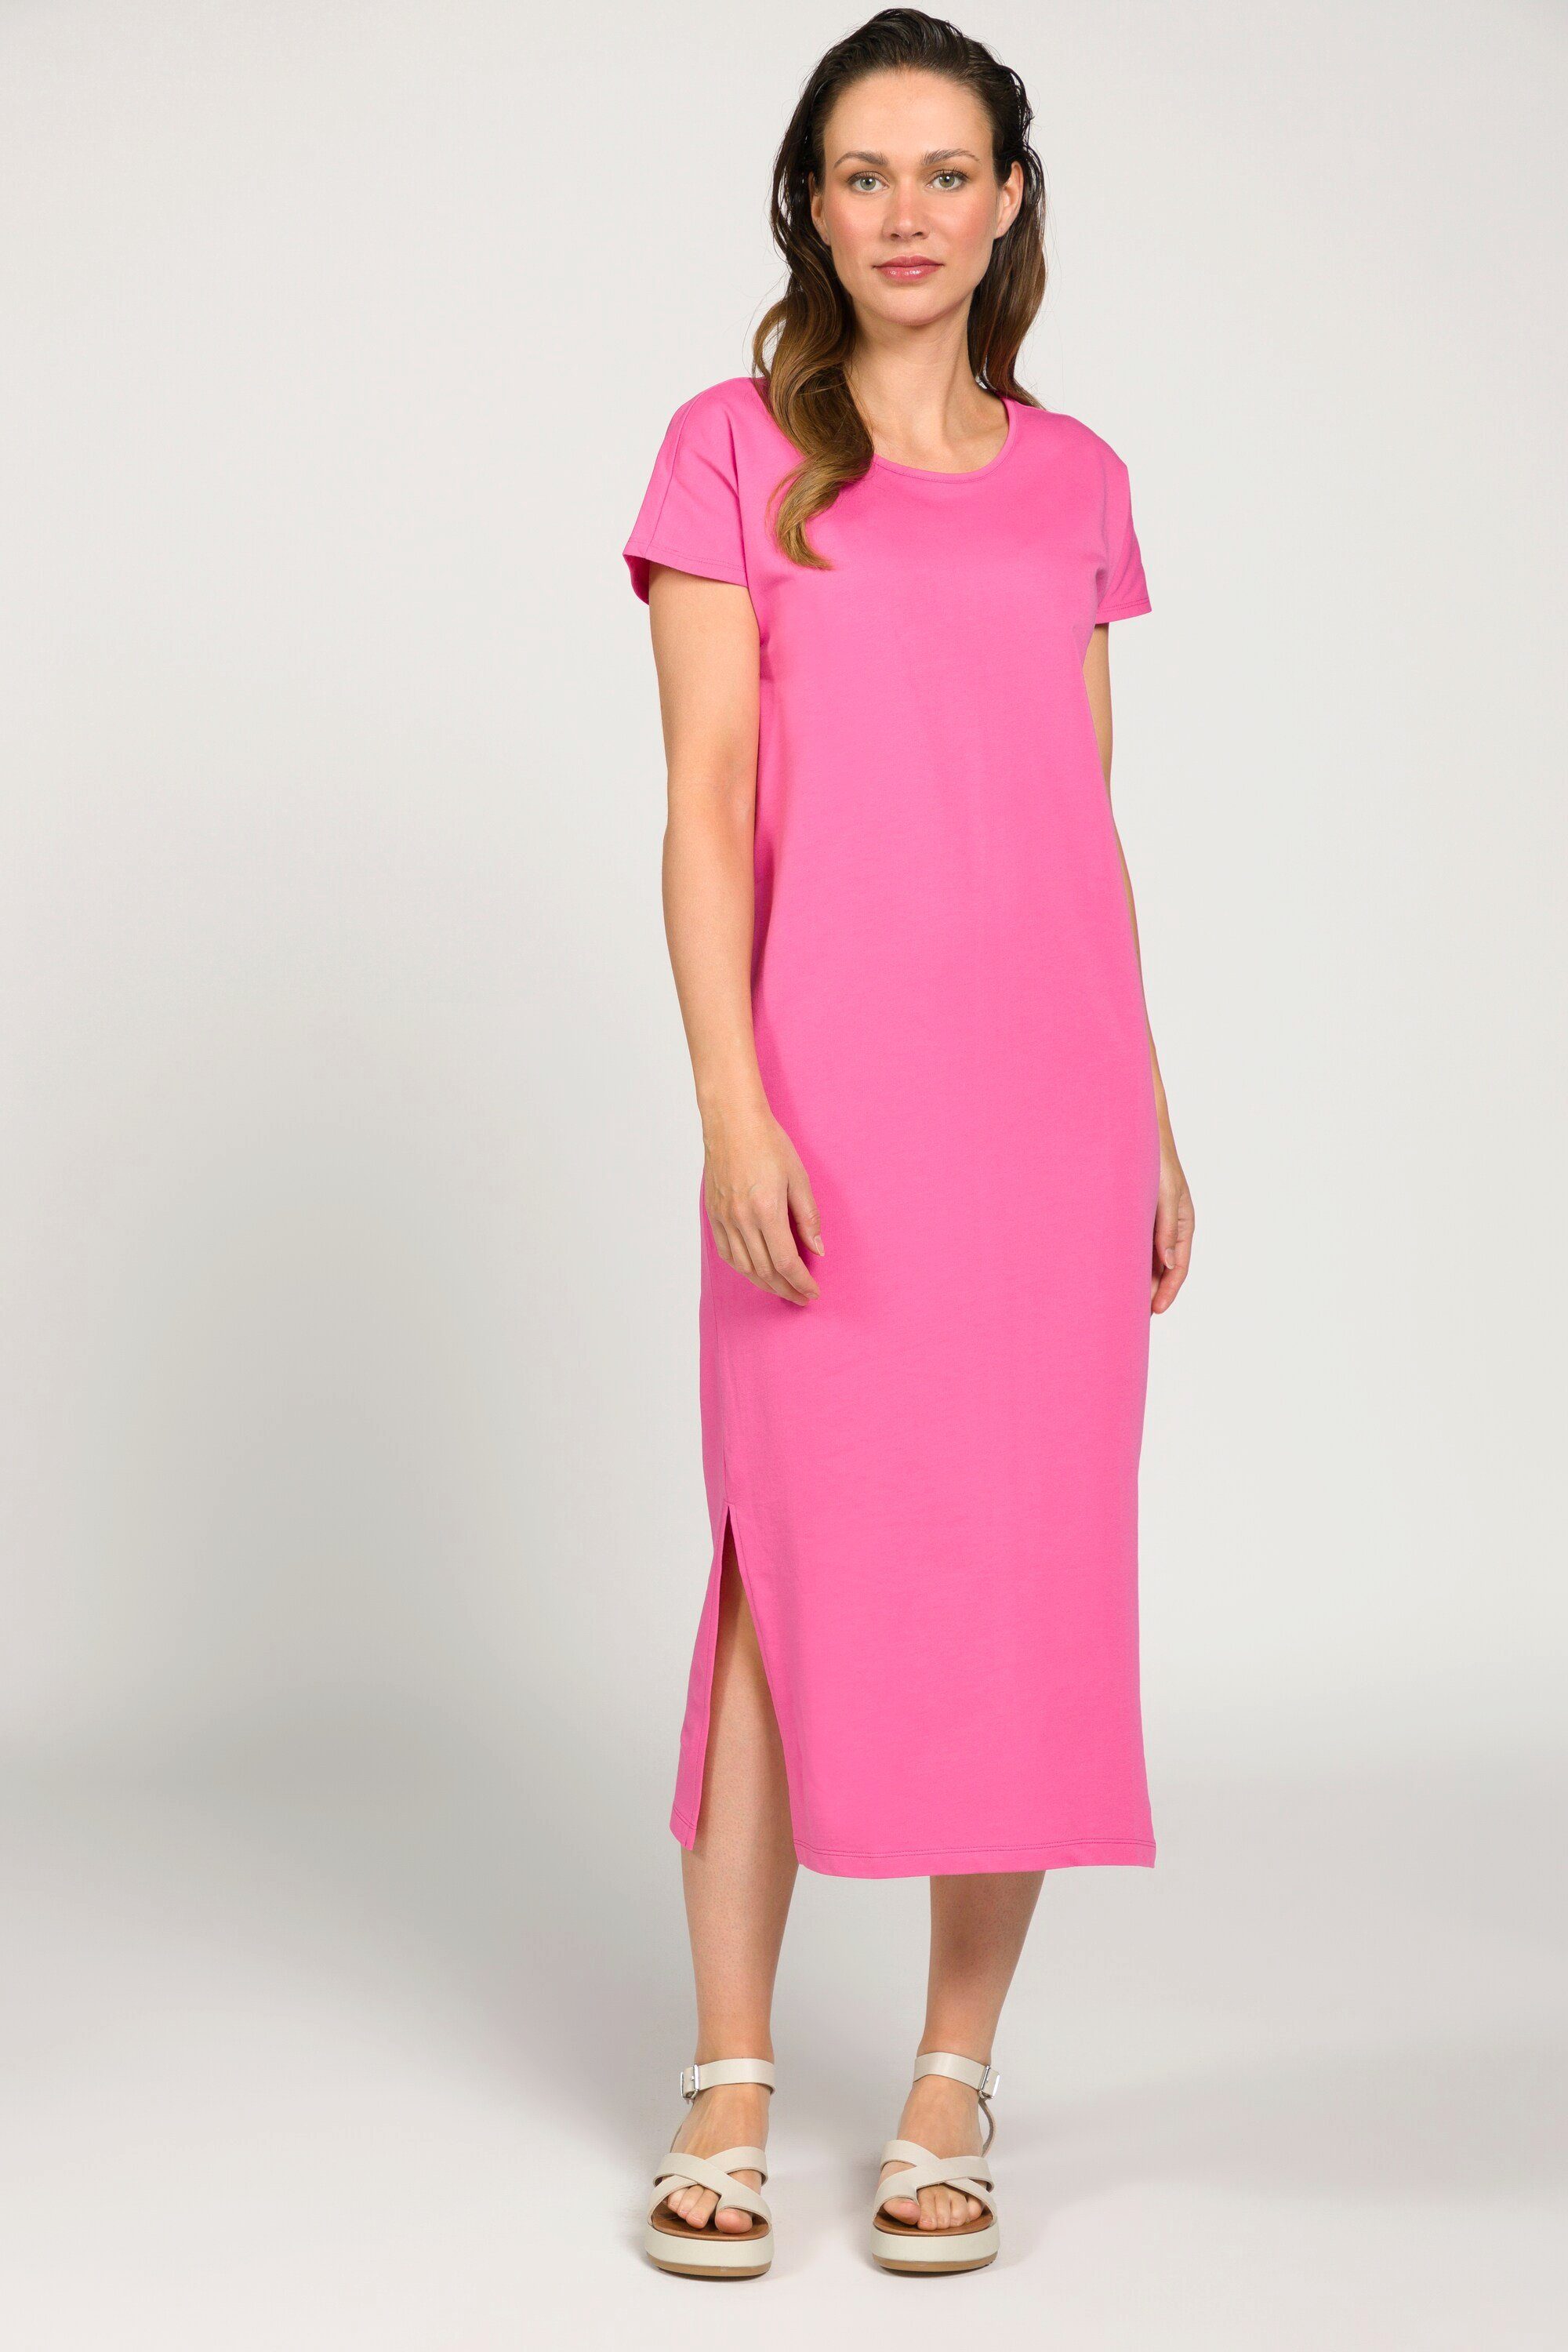 Laura Kleid Rundhals Gina ärmellos pink Seitenschlitze Jersey Jerseykleid